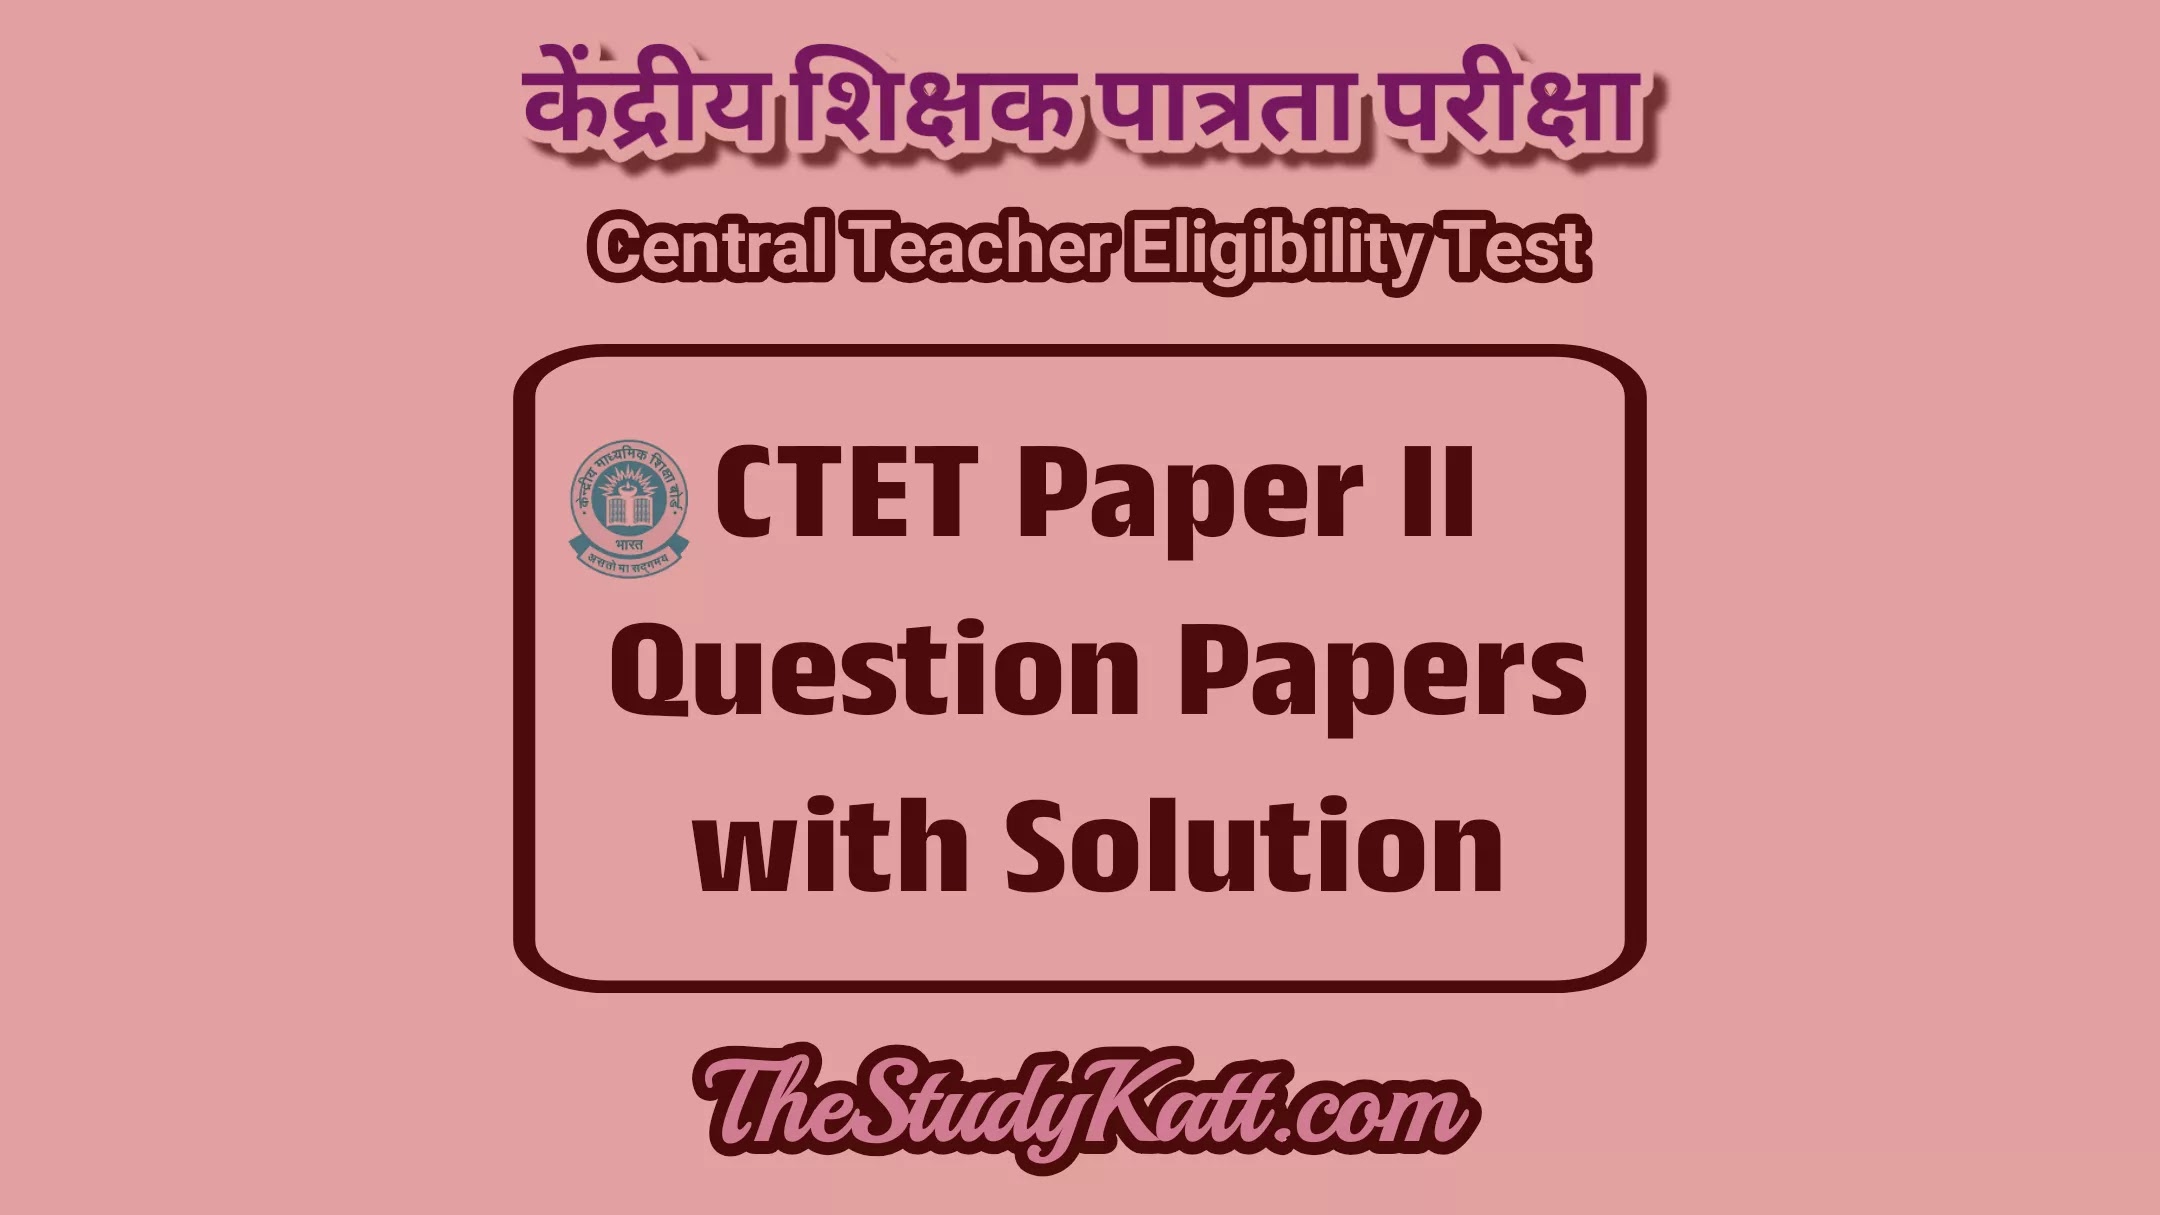 CTET June 2011 Question Papers with Solutions - Paper 2 | CTET जून २०११ प्रश्नपत्रिका स्पष्टीकरनासह - पेपर २